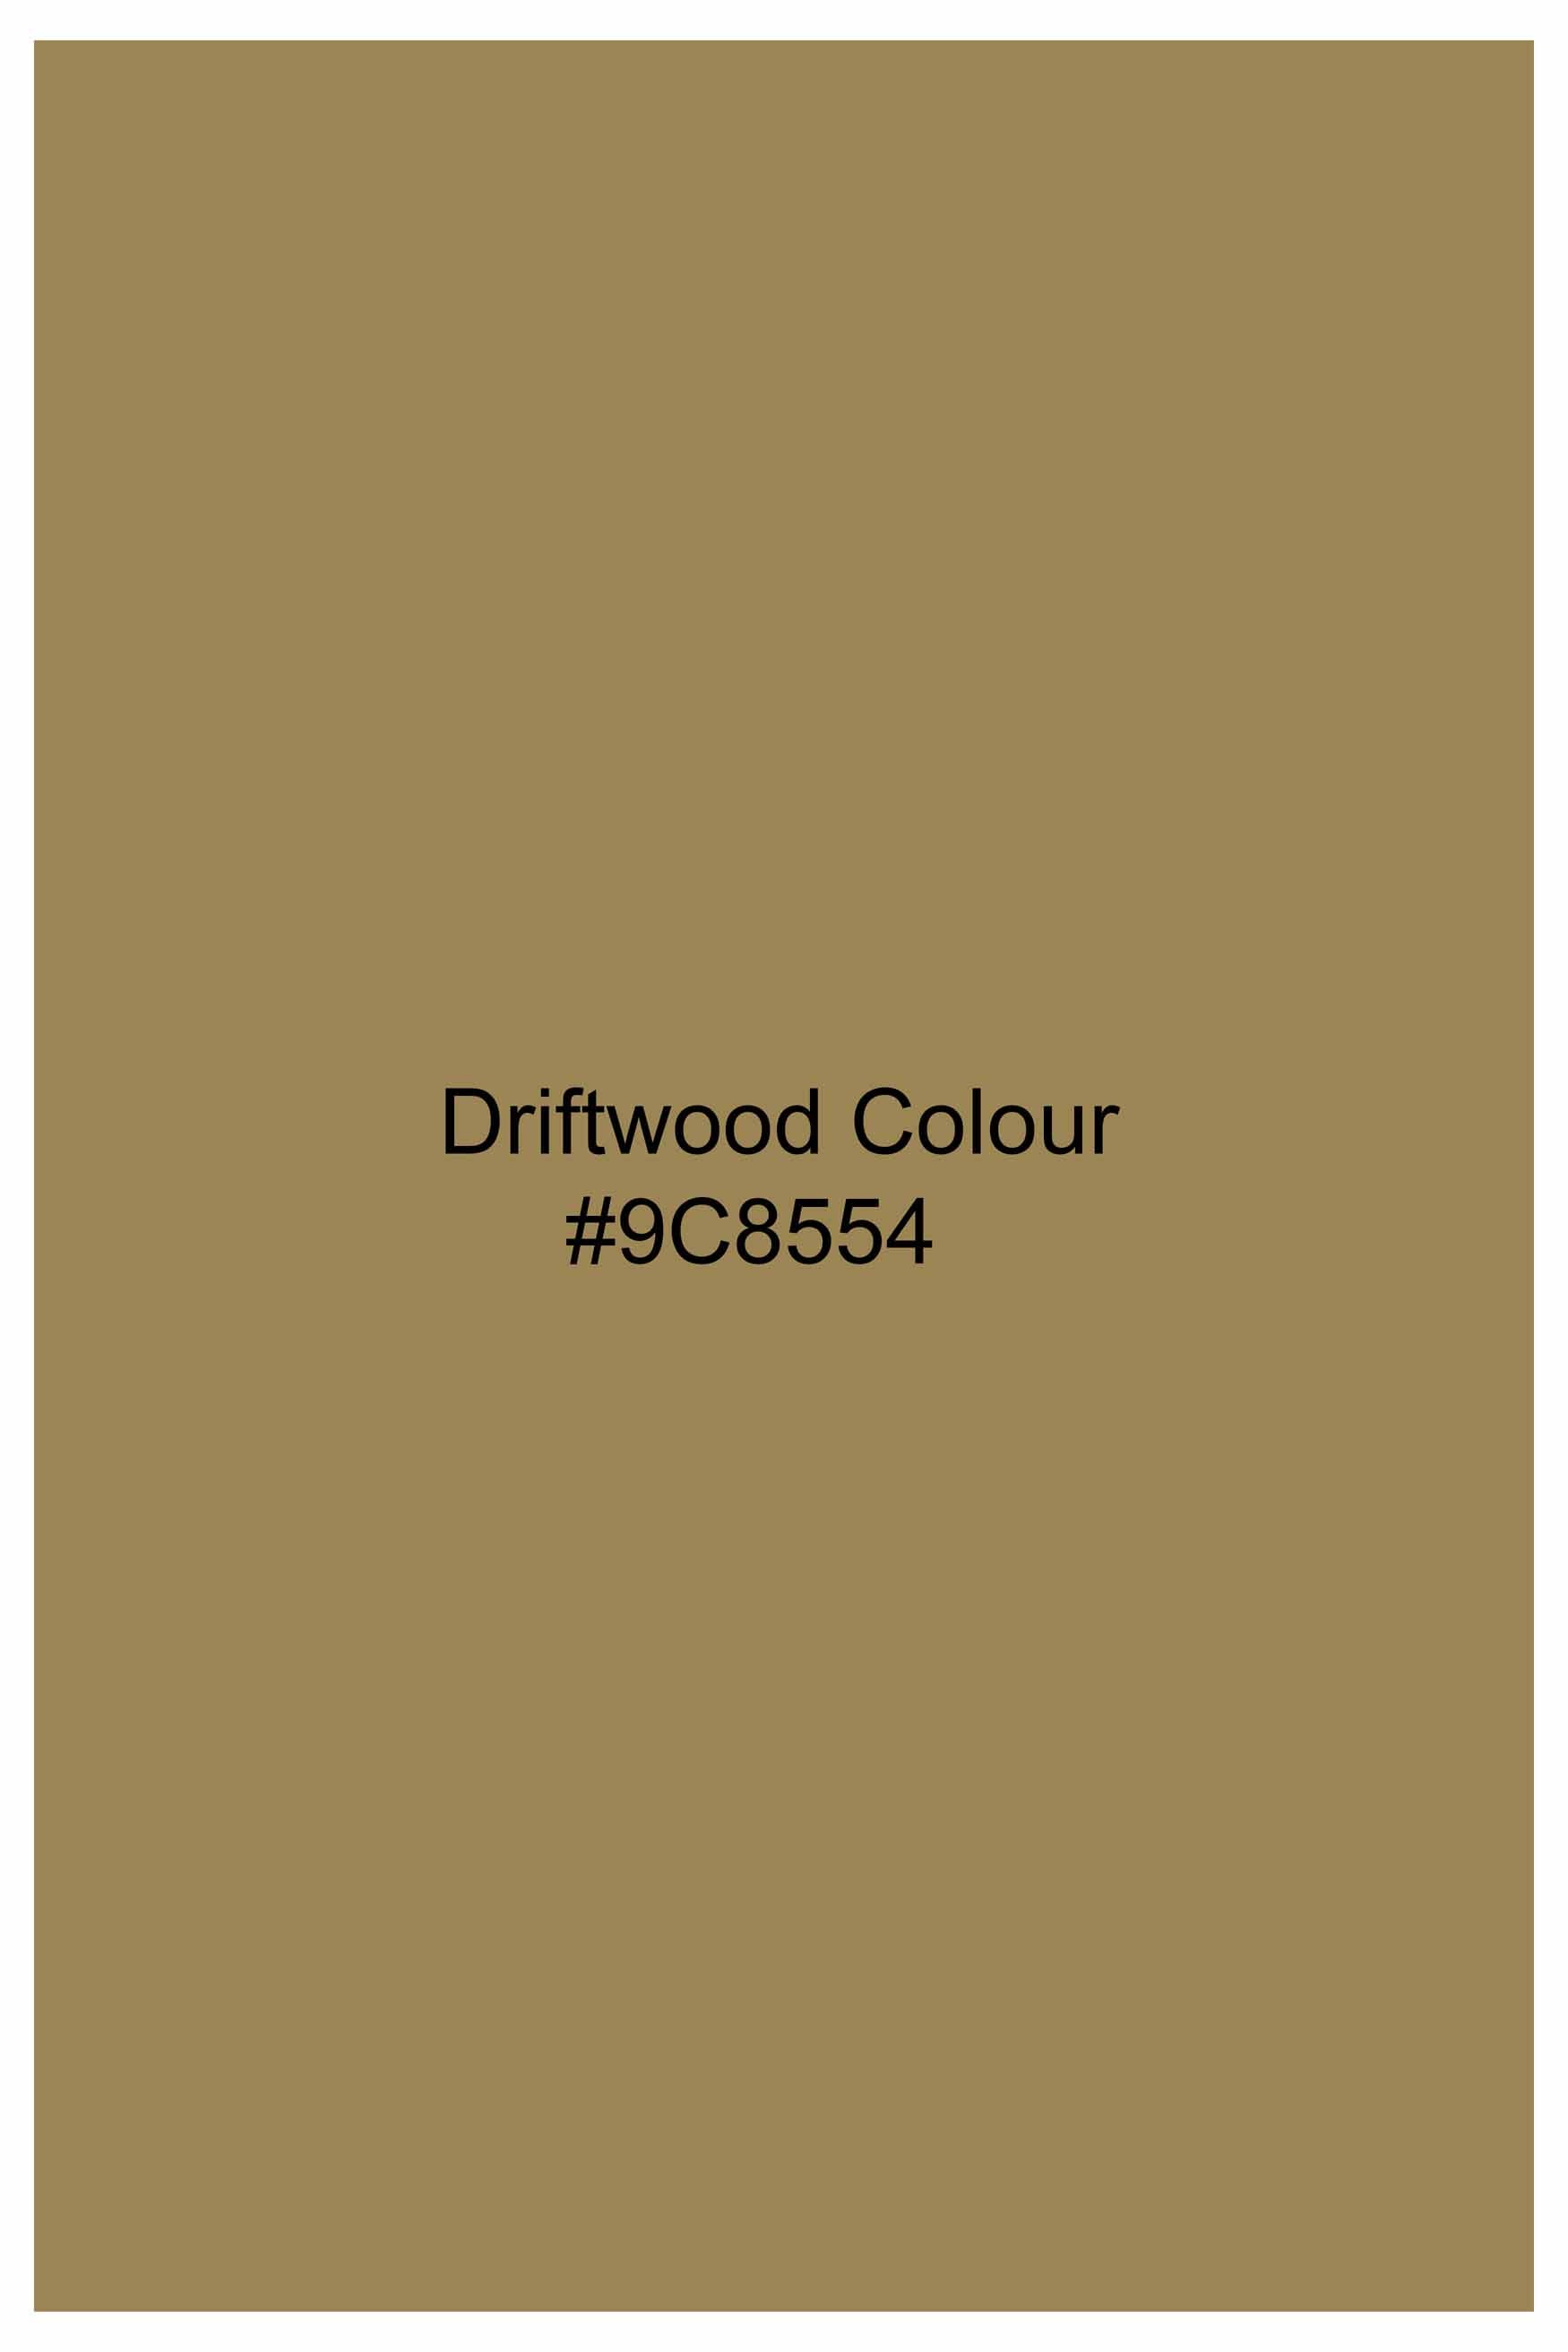 Driftwood Brown Triangle Hand Painted Royal Oxford Designer Shirt 6400-BD-ART-38, 6400-BD-ART-H-38, 6400-BD-ART-39, 6400-BD-ART-H-39, 6400-BD-ART-40, 6400-BD-ART-H-40, 6400-BD-ART-42, 6400-BD-ART-H-42, 6400-BD-ART-44, 6400-BD-ART-H-44, 6400-BD-ART-46, 6400-BD-ART-H-46, 6400-BD-ART-48, 6400-BD-ART-H-48, 6400-BD-ART-50, 6400-BD-ART-H-50, 6400-BD-ART-52, 6400-BD-ART-H-52